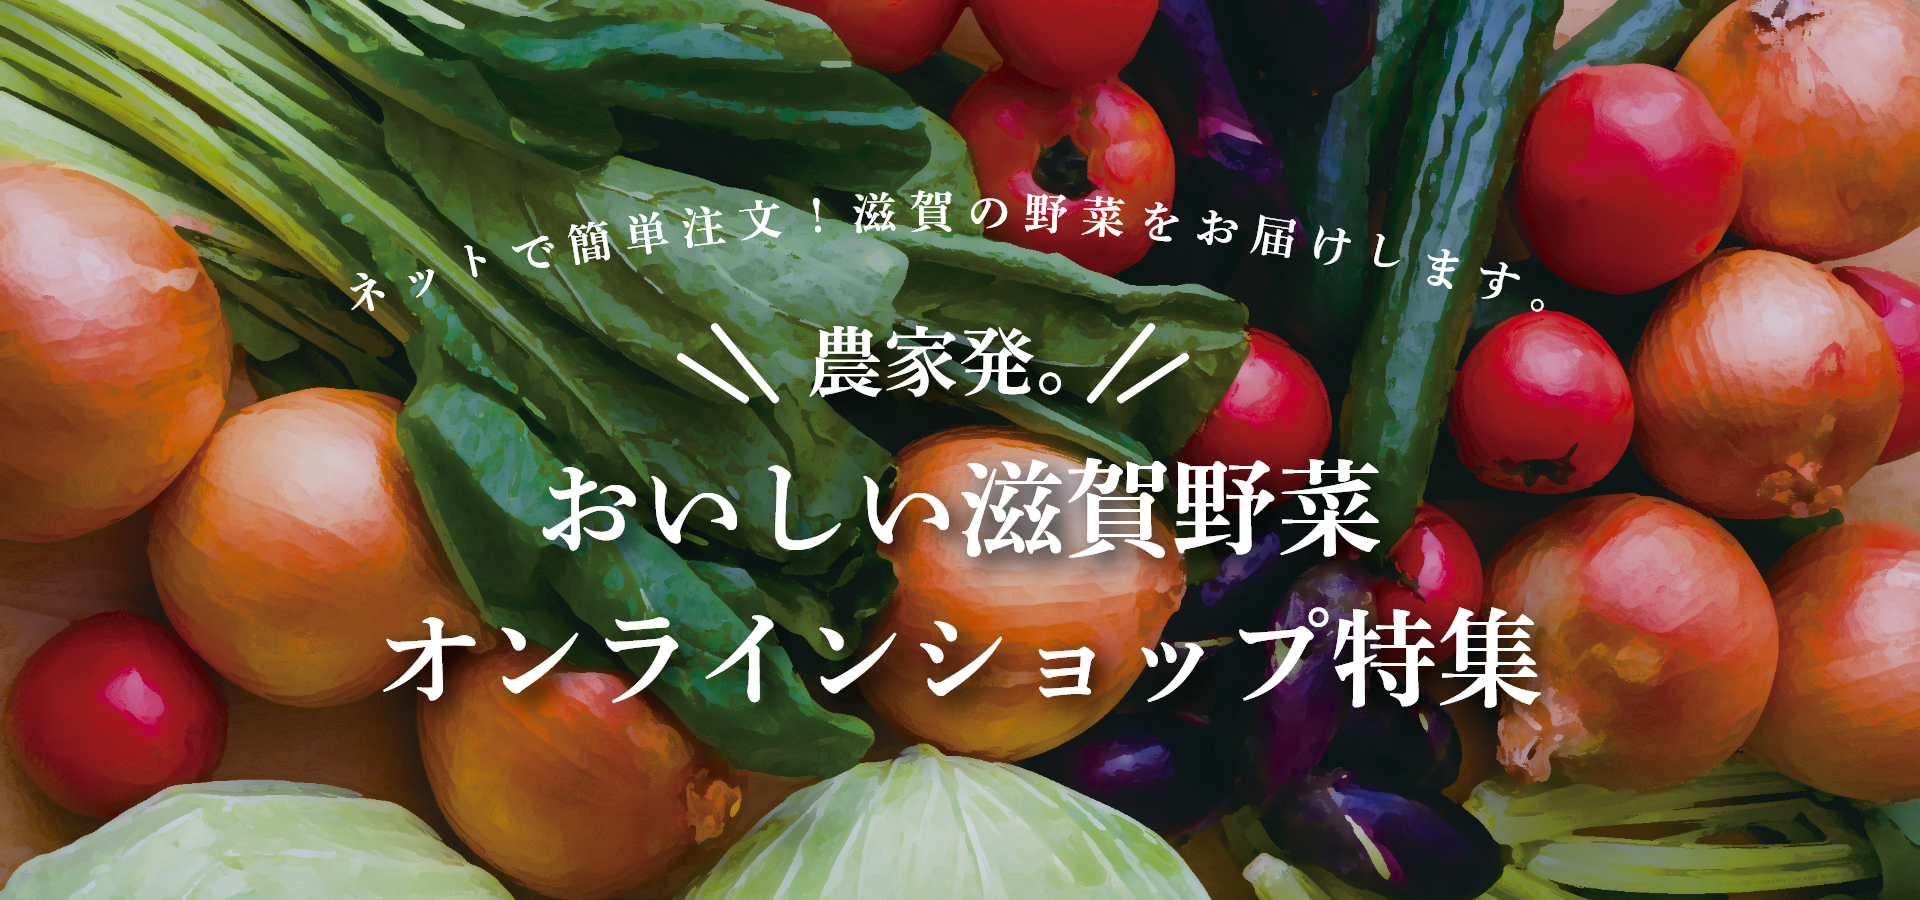 おいしい滋賀野菜 オンラインショップ特集